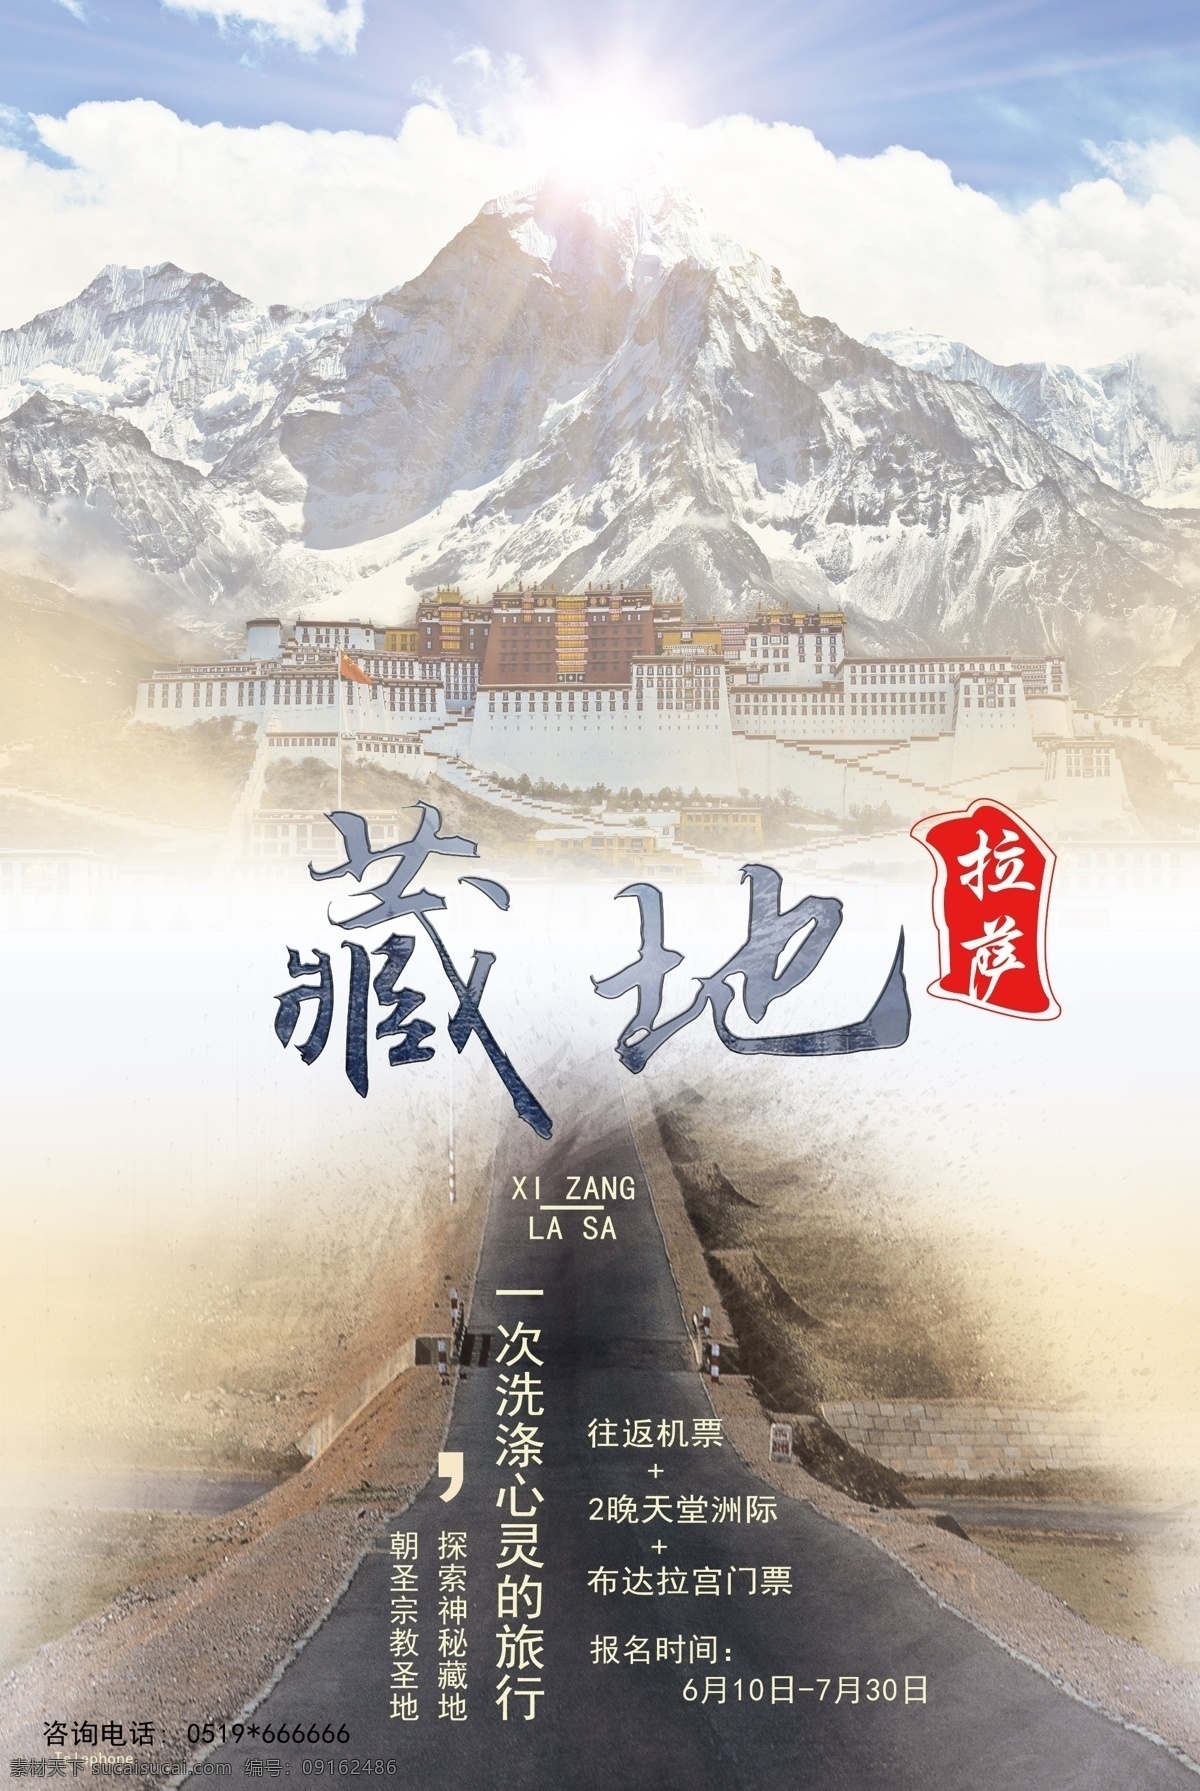 旅游风景海报 旅游 风景 西藏 高端 大气 海报